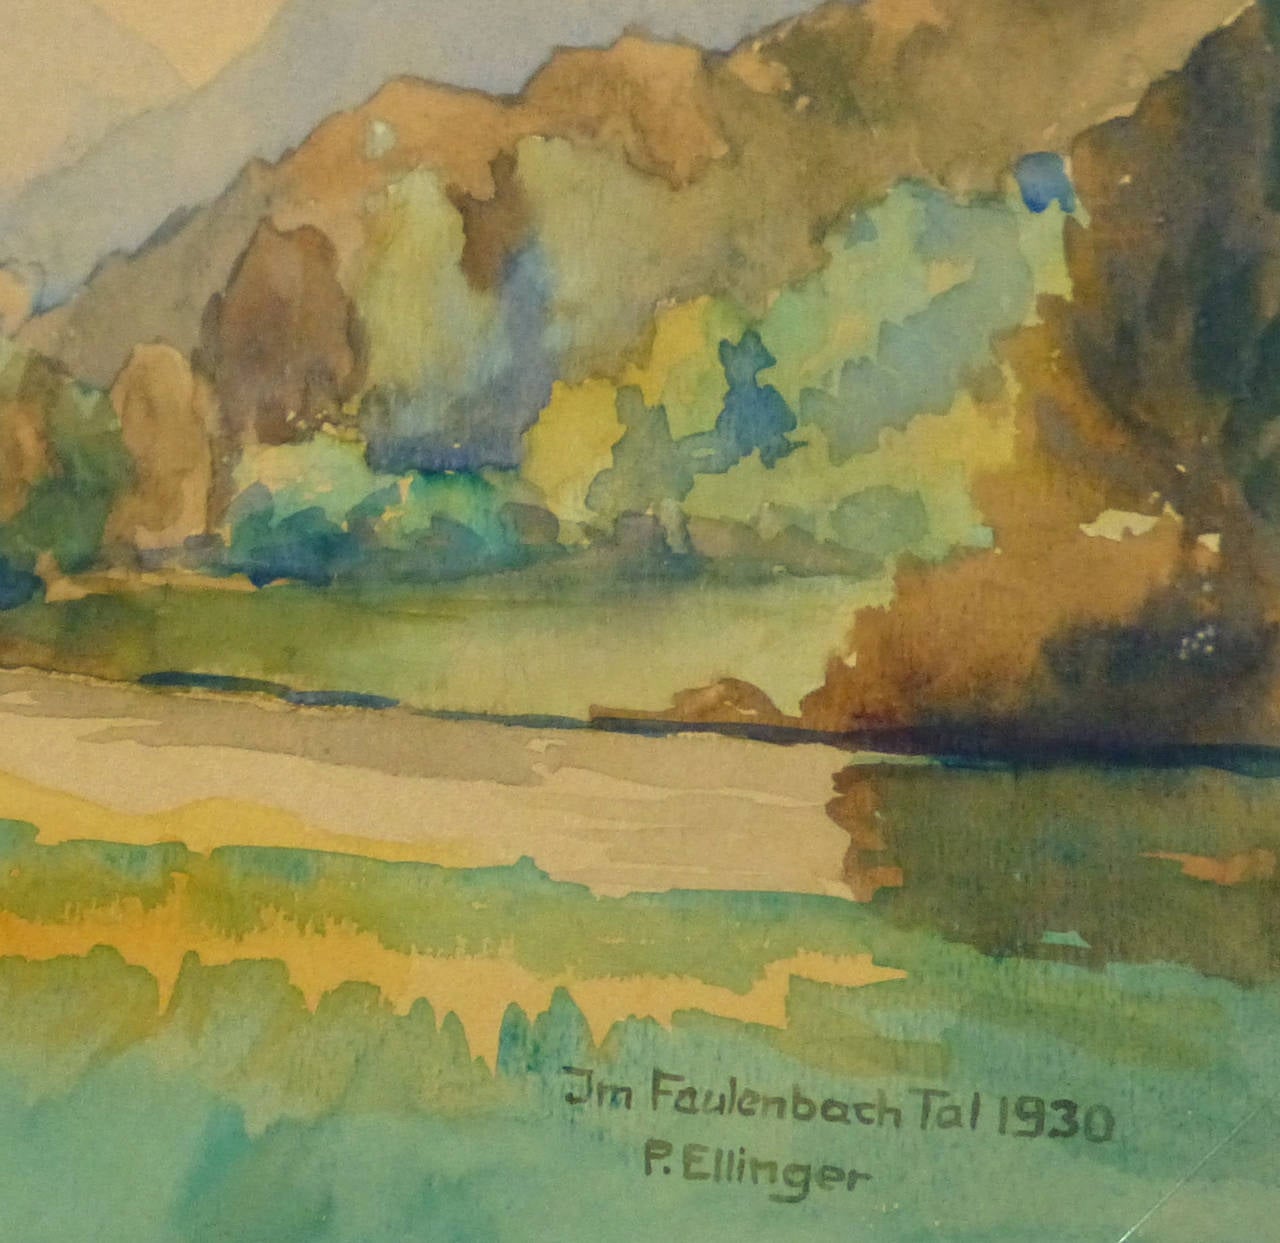 Vintage Watercolor Landscape - Faulenbach River - Brown Landscape Art by Paul Ellinger